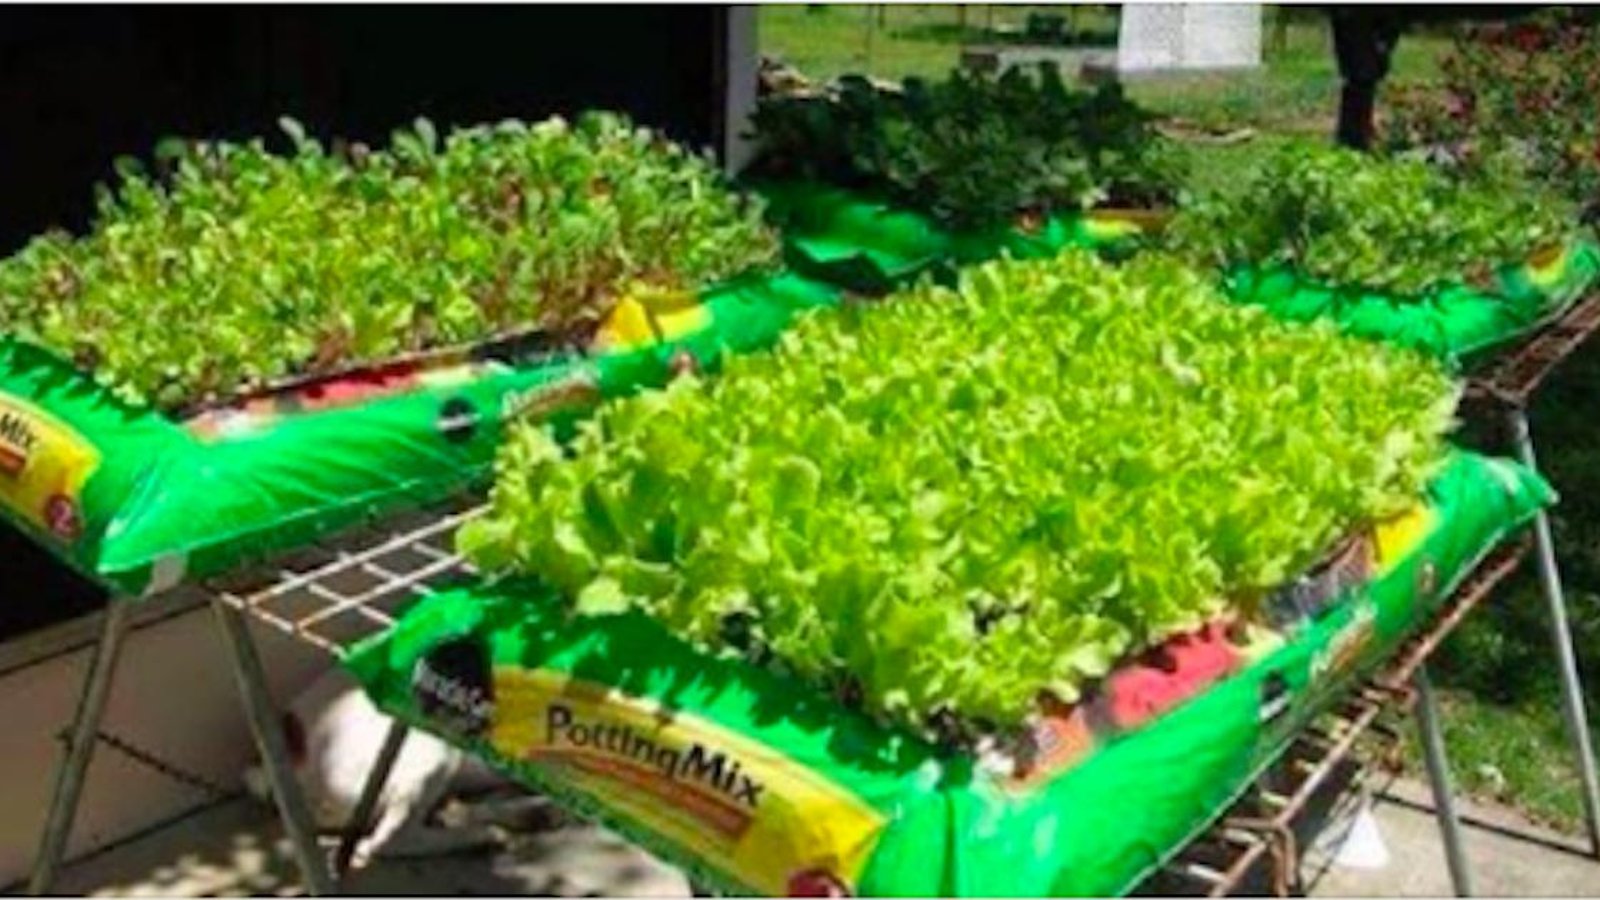 Des gens cultivent des jardins dans des sacs de terre et c'est génial!